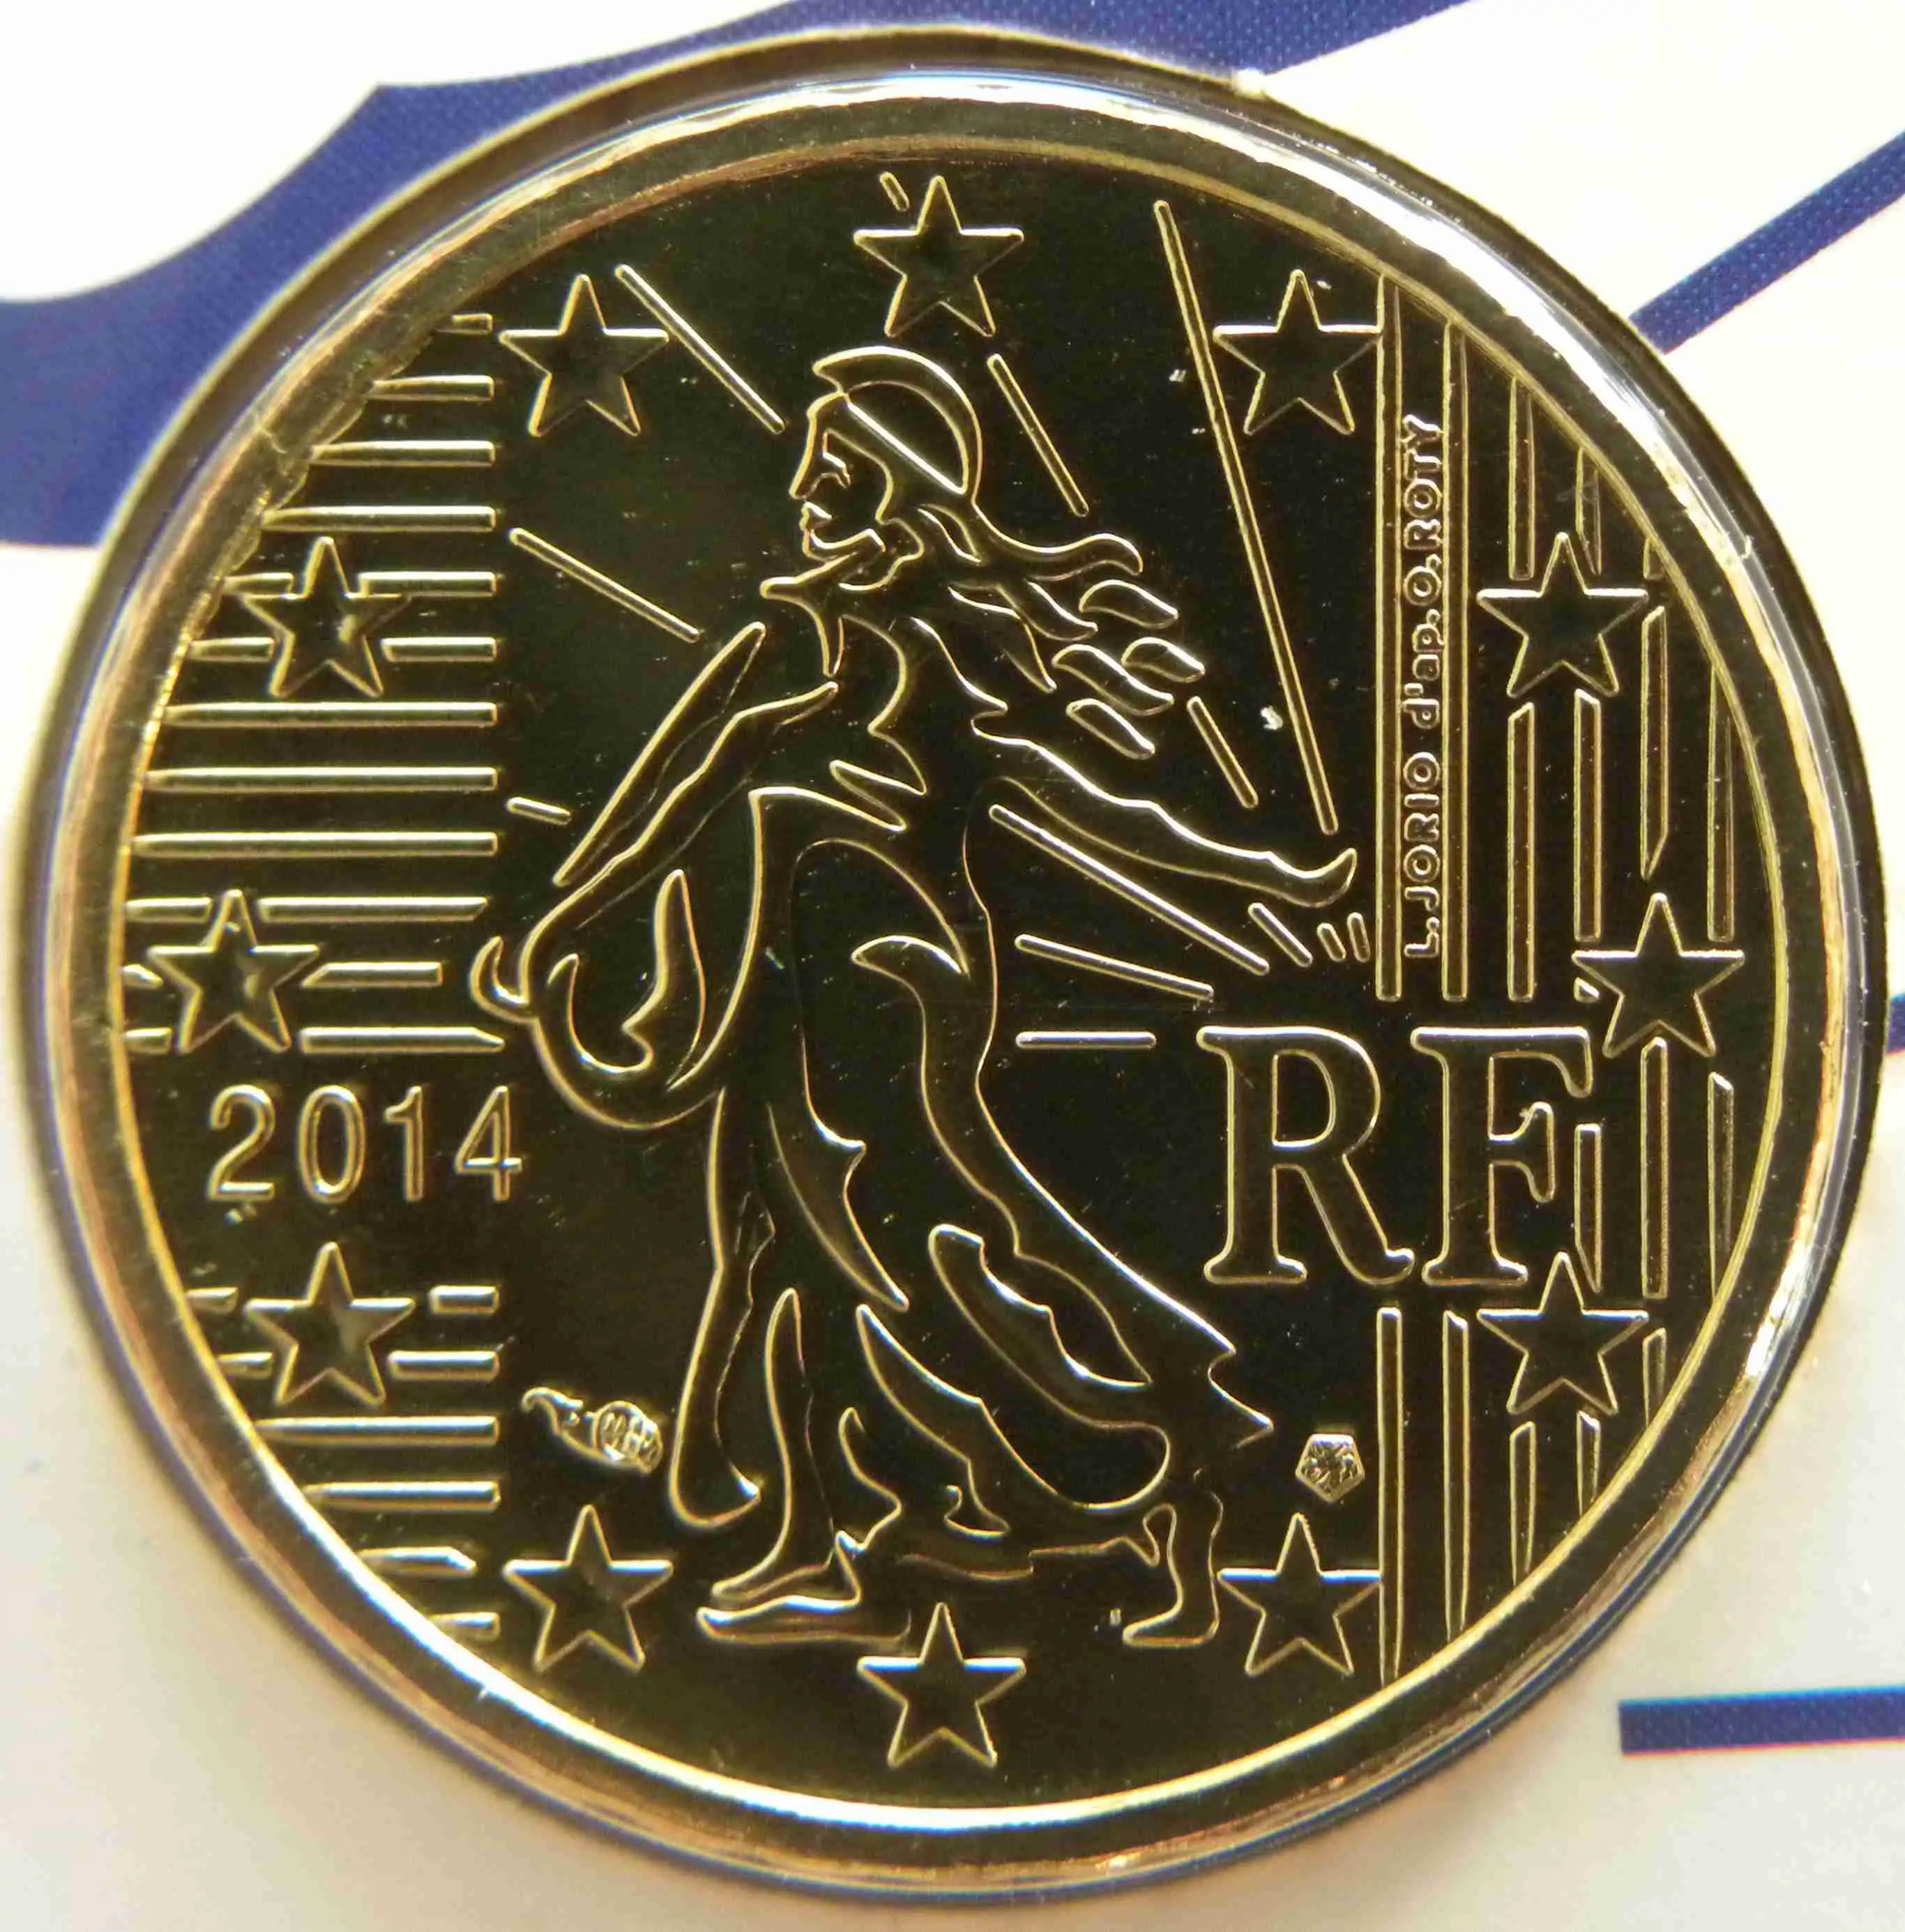 euro cent coin